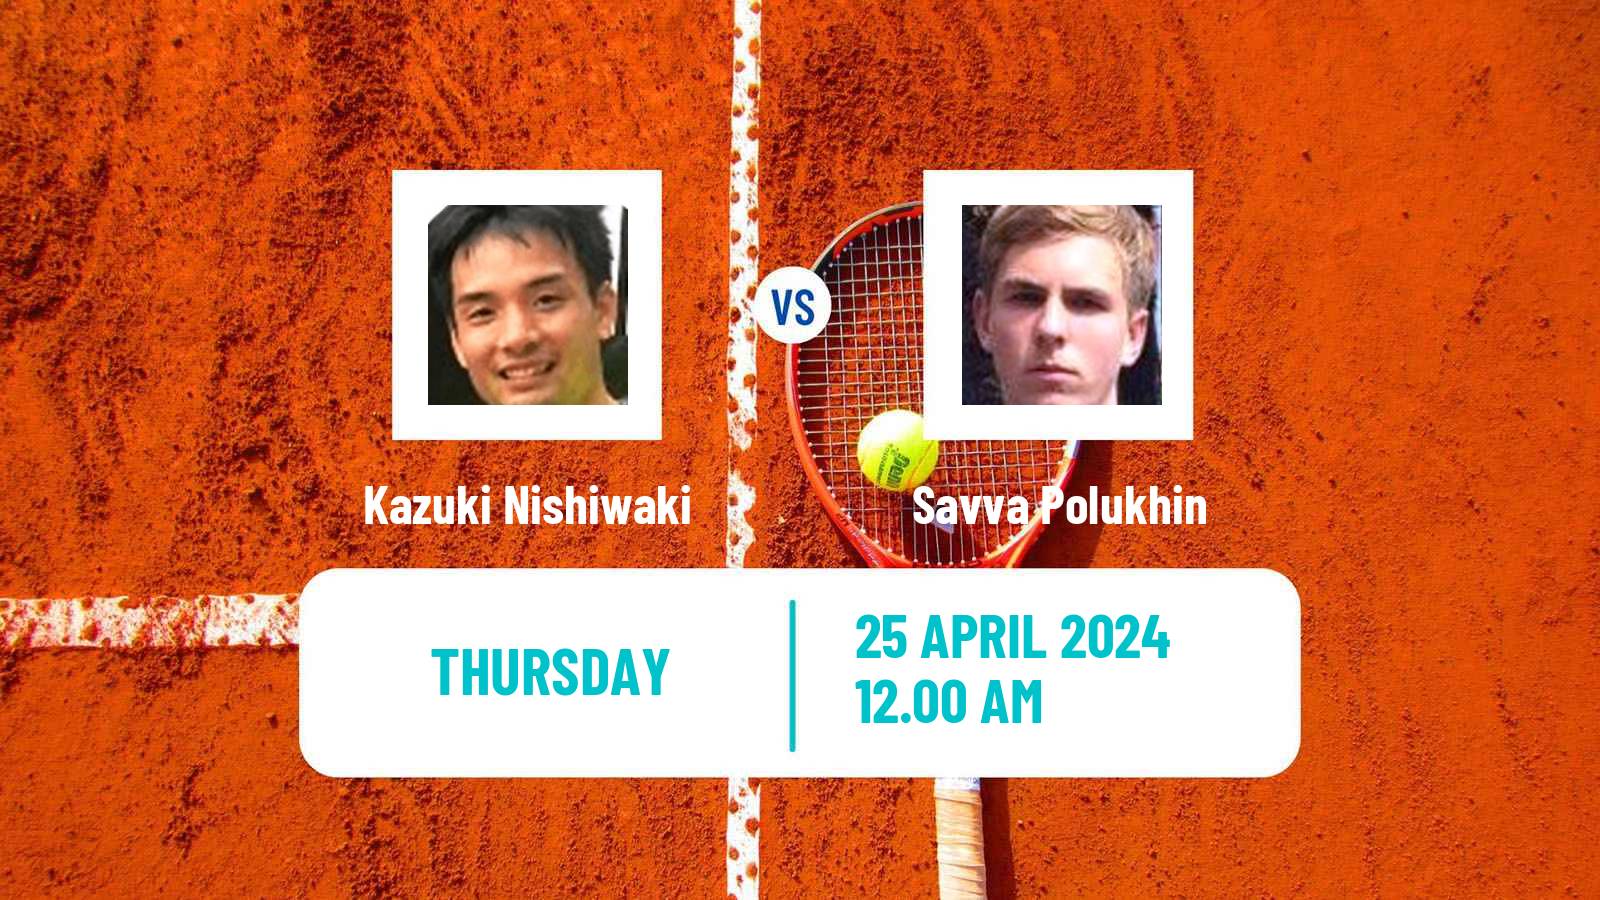 Tennis ITF M15 Shymkent 2 Men Kazuki Nishiwaki - Savva Polukhin